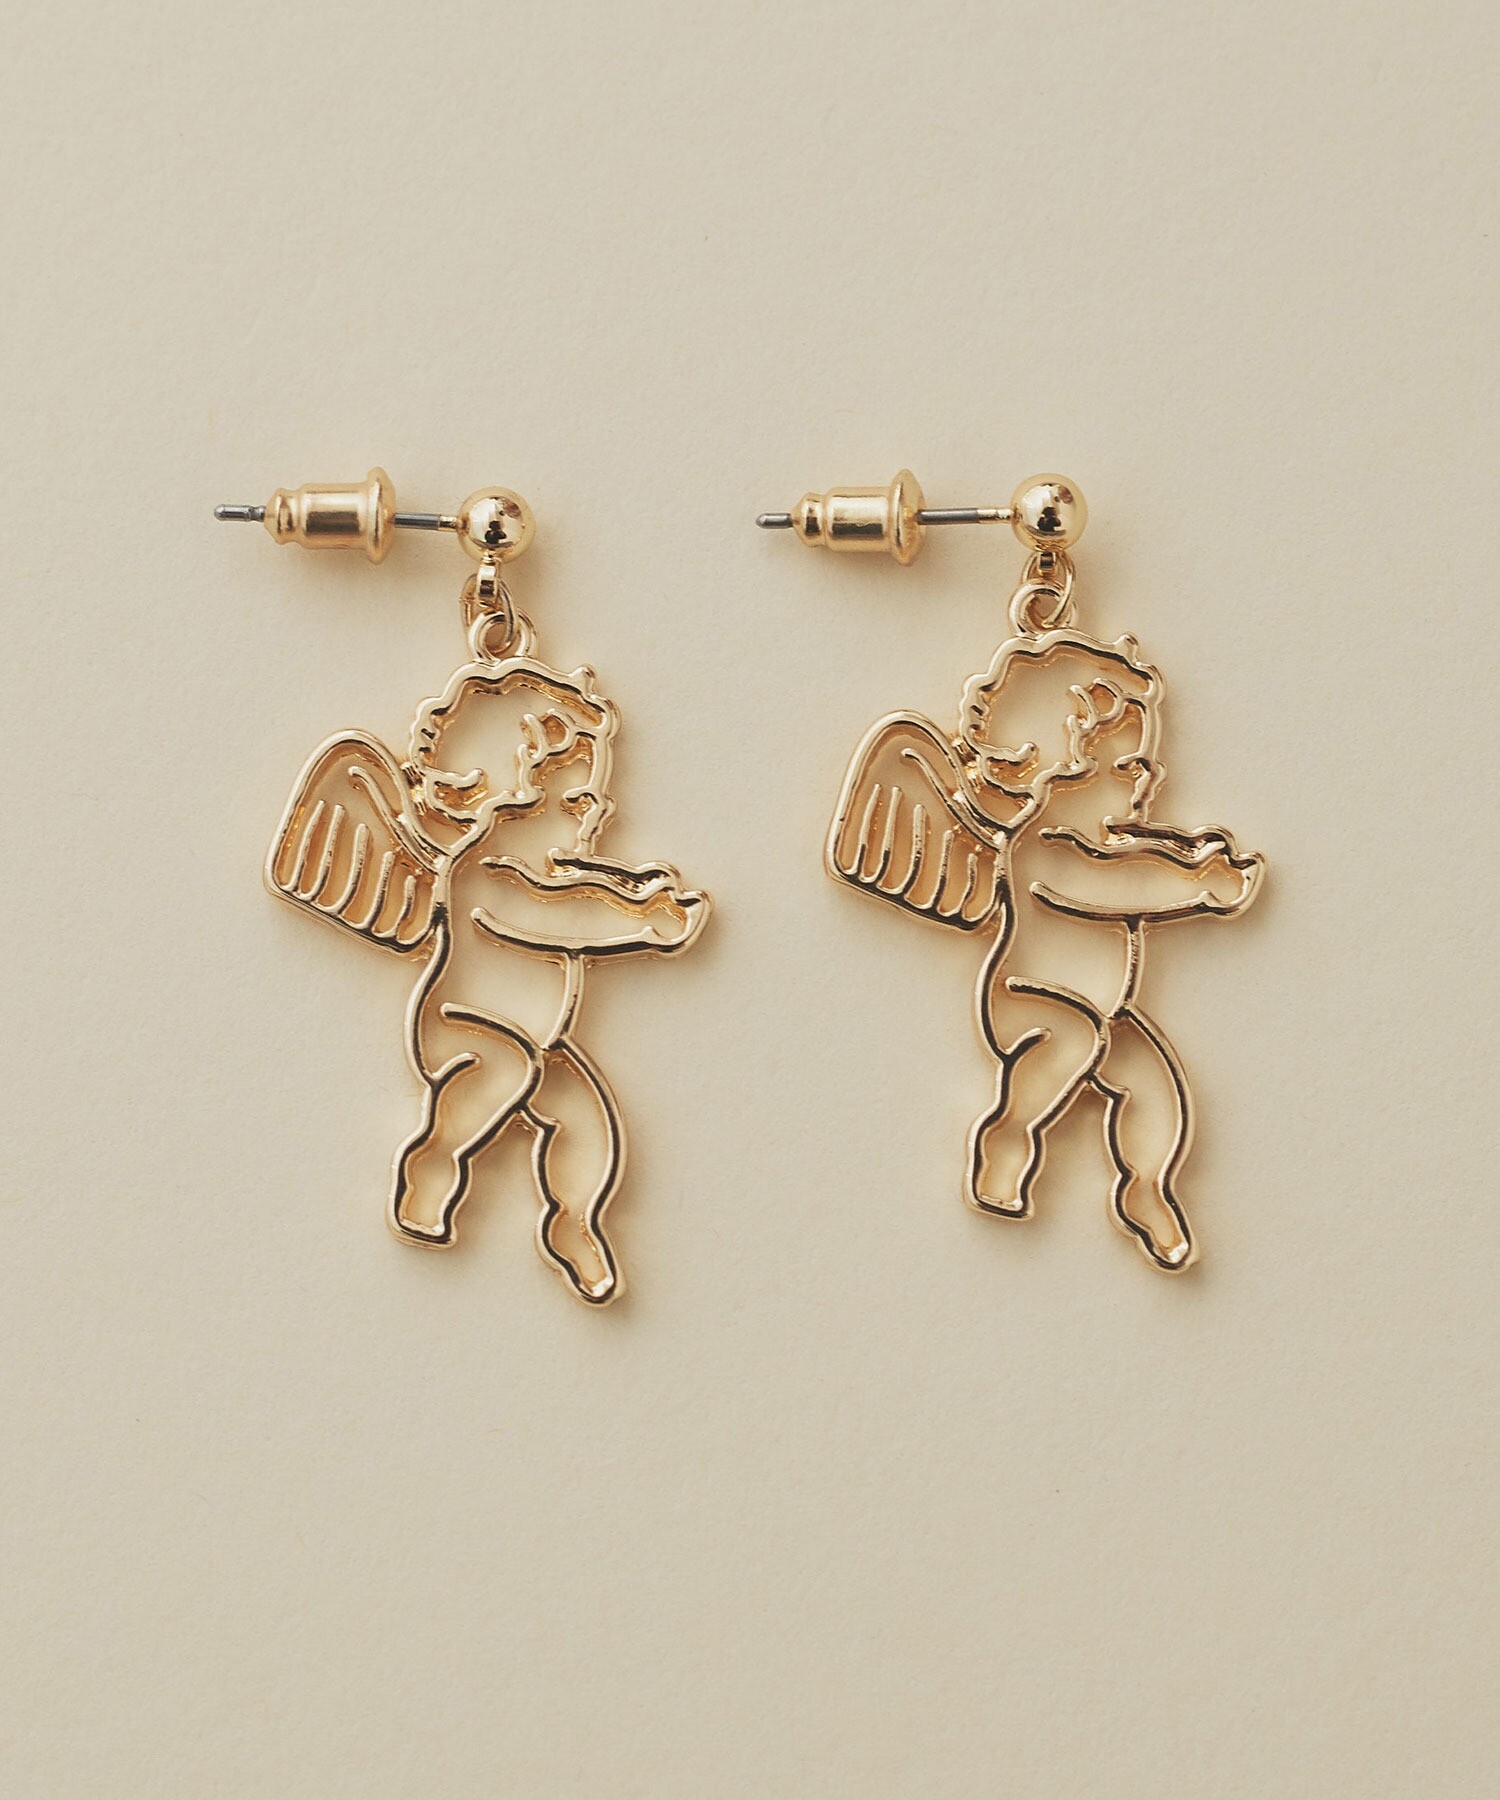 AMBIDEX Store ANGEL CHARM earring / pierce(F イヤリング): l 